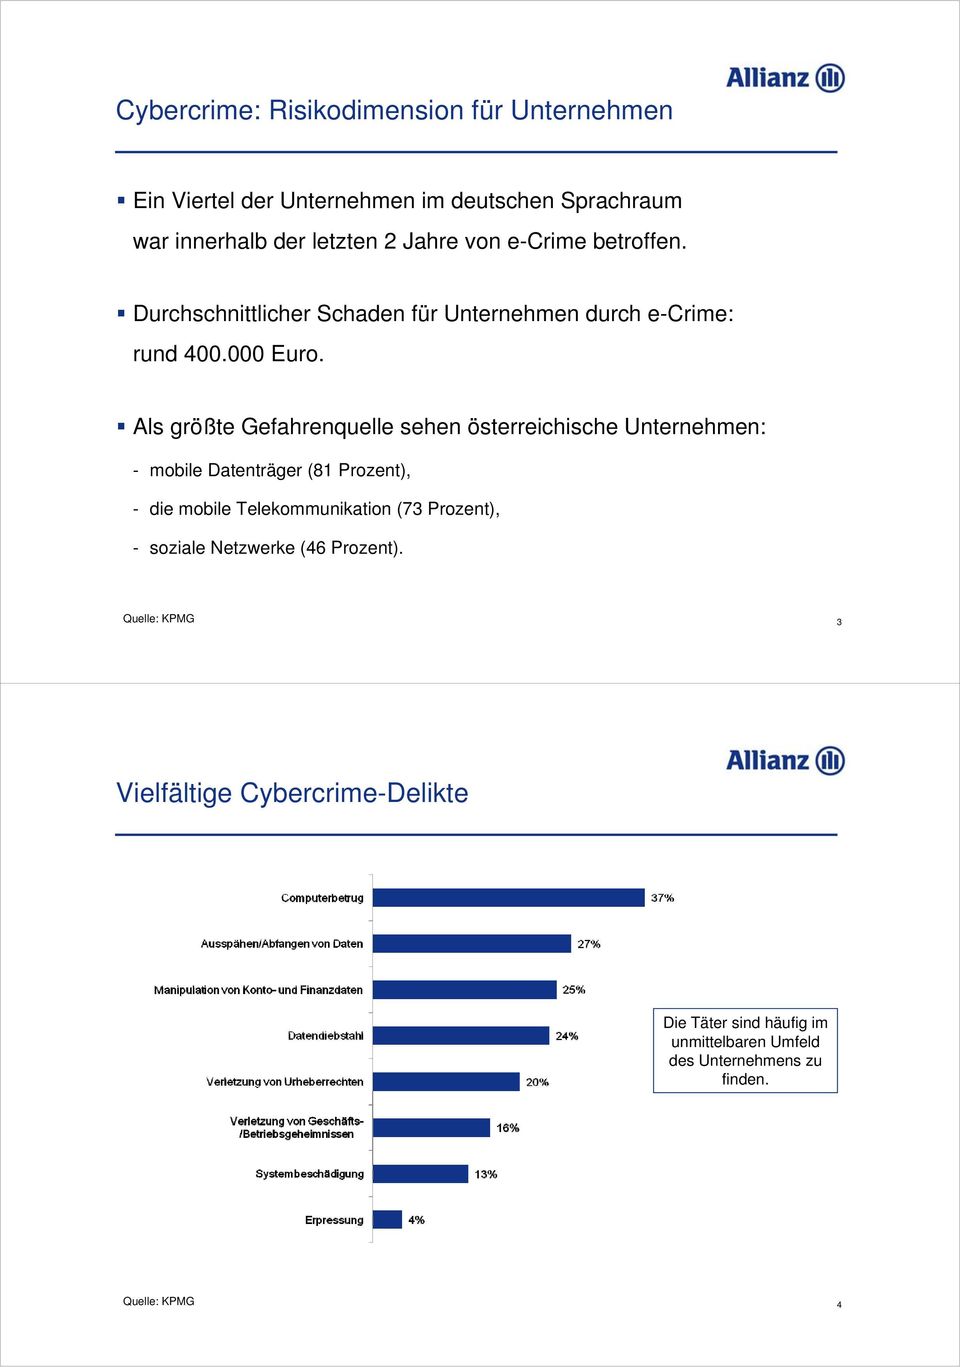 Als größte Gefahrenquelle sehen österreichische Unternehmen: - mobile Datenträger (81 Prozent), - die mobile Telekommunikation (73